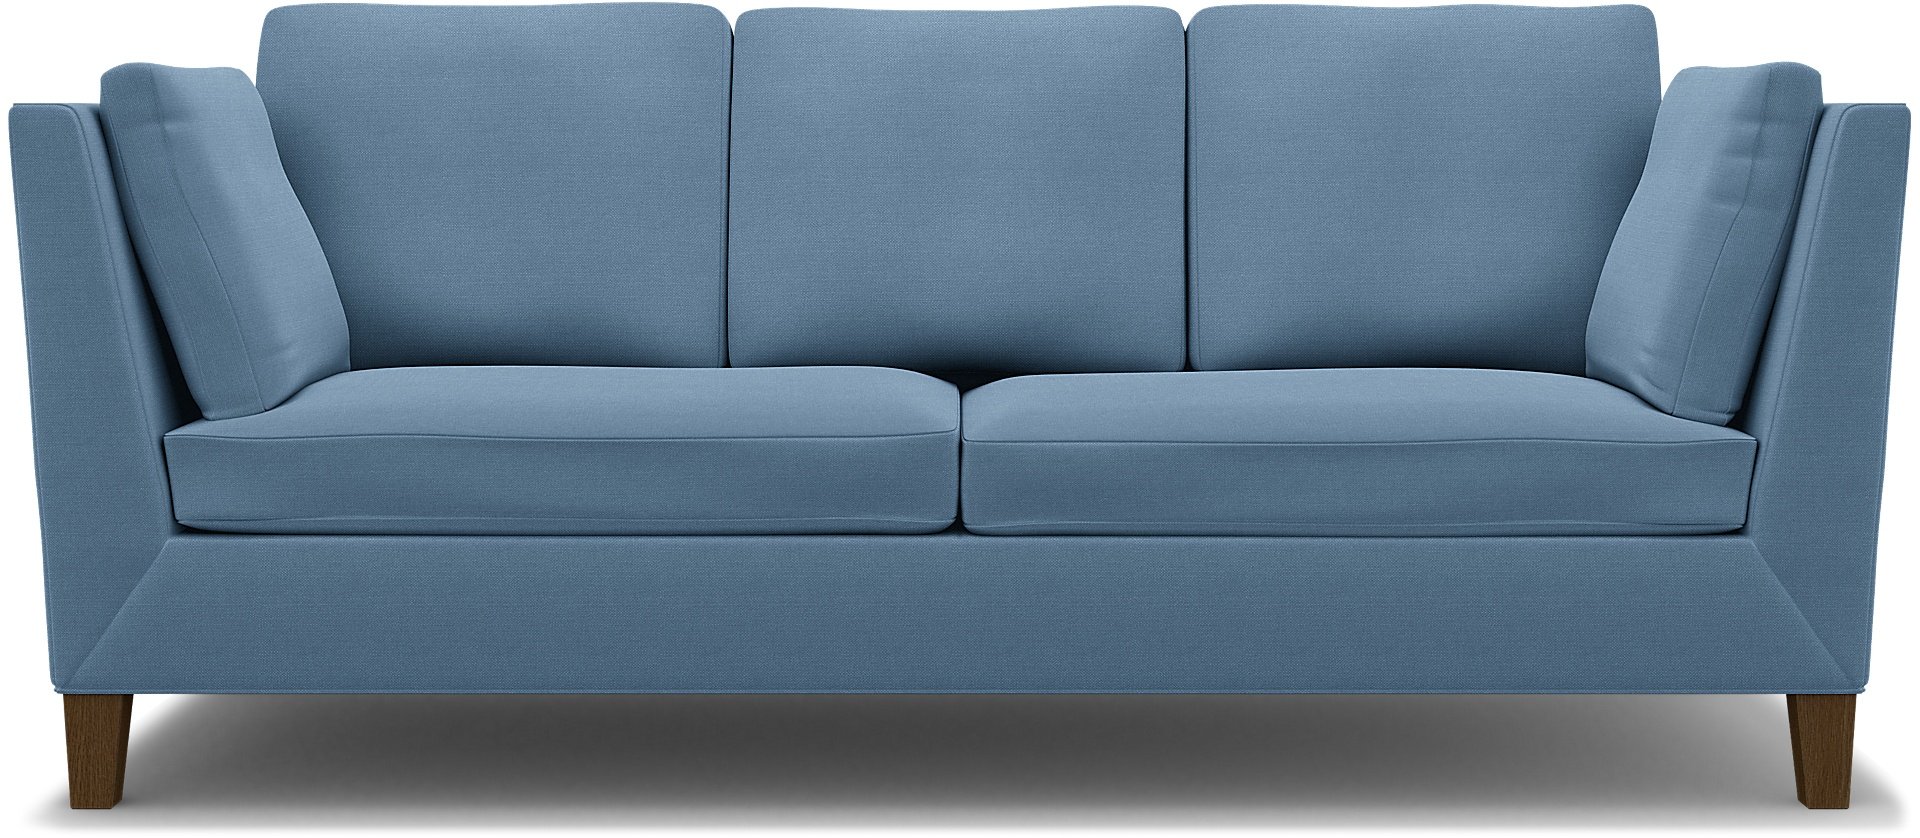 IKEA - Stockholm 3 Seater Sofa Cover , Vintage Blue, Linen - Bemz